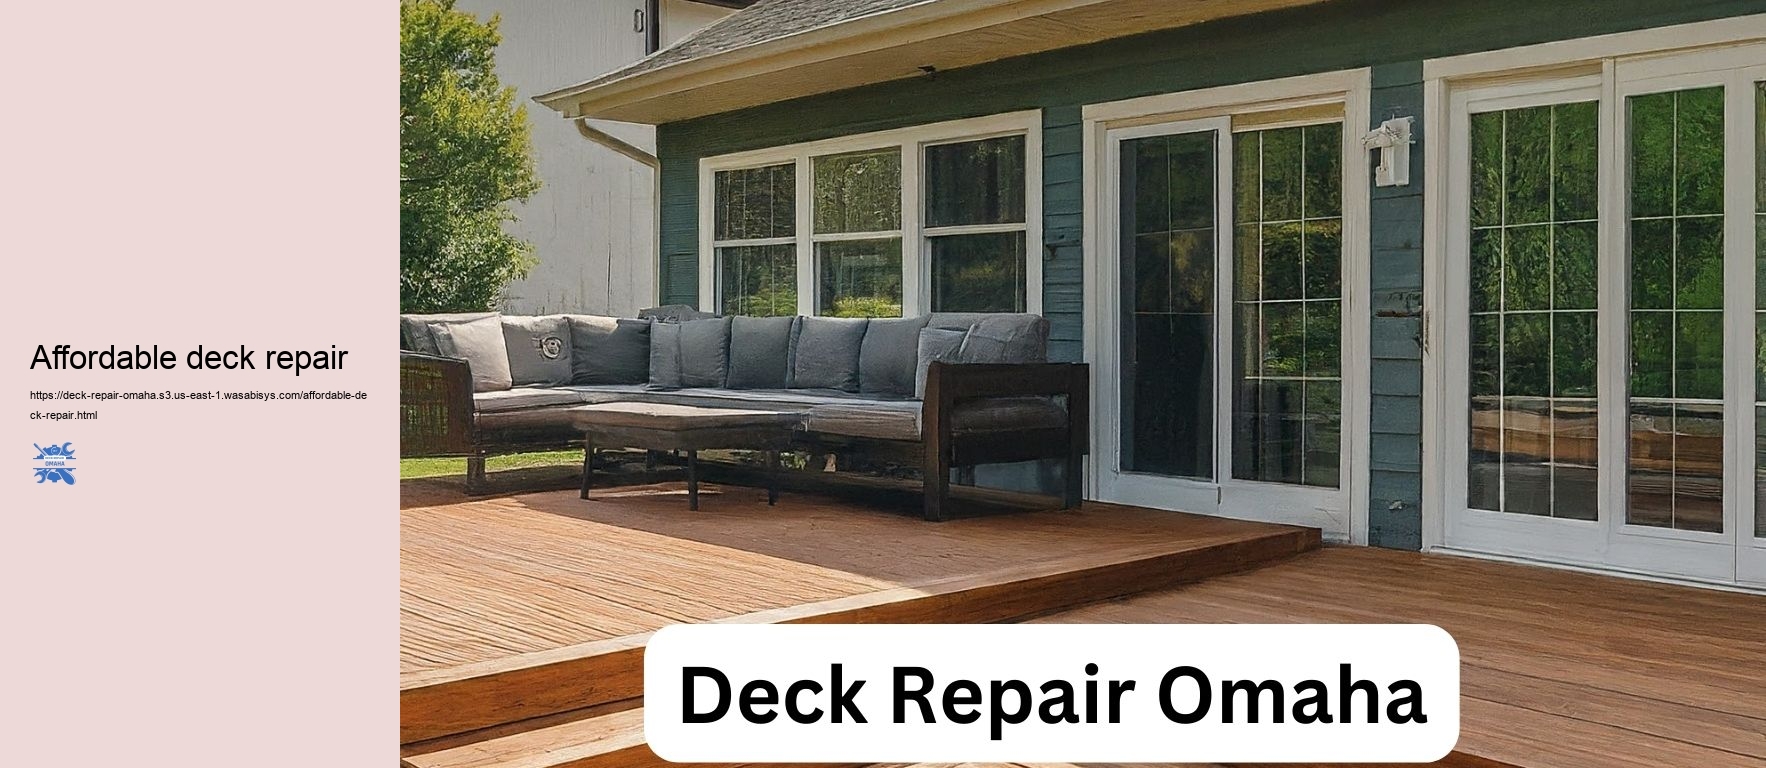 Affordable deck repair